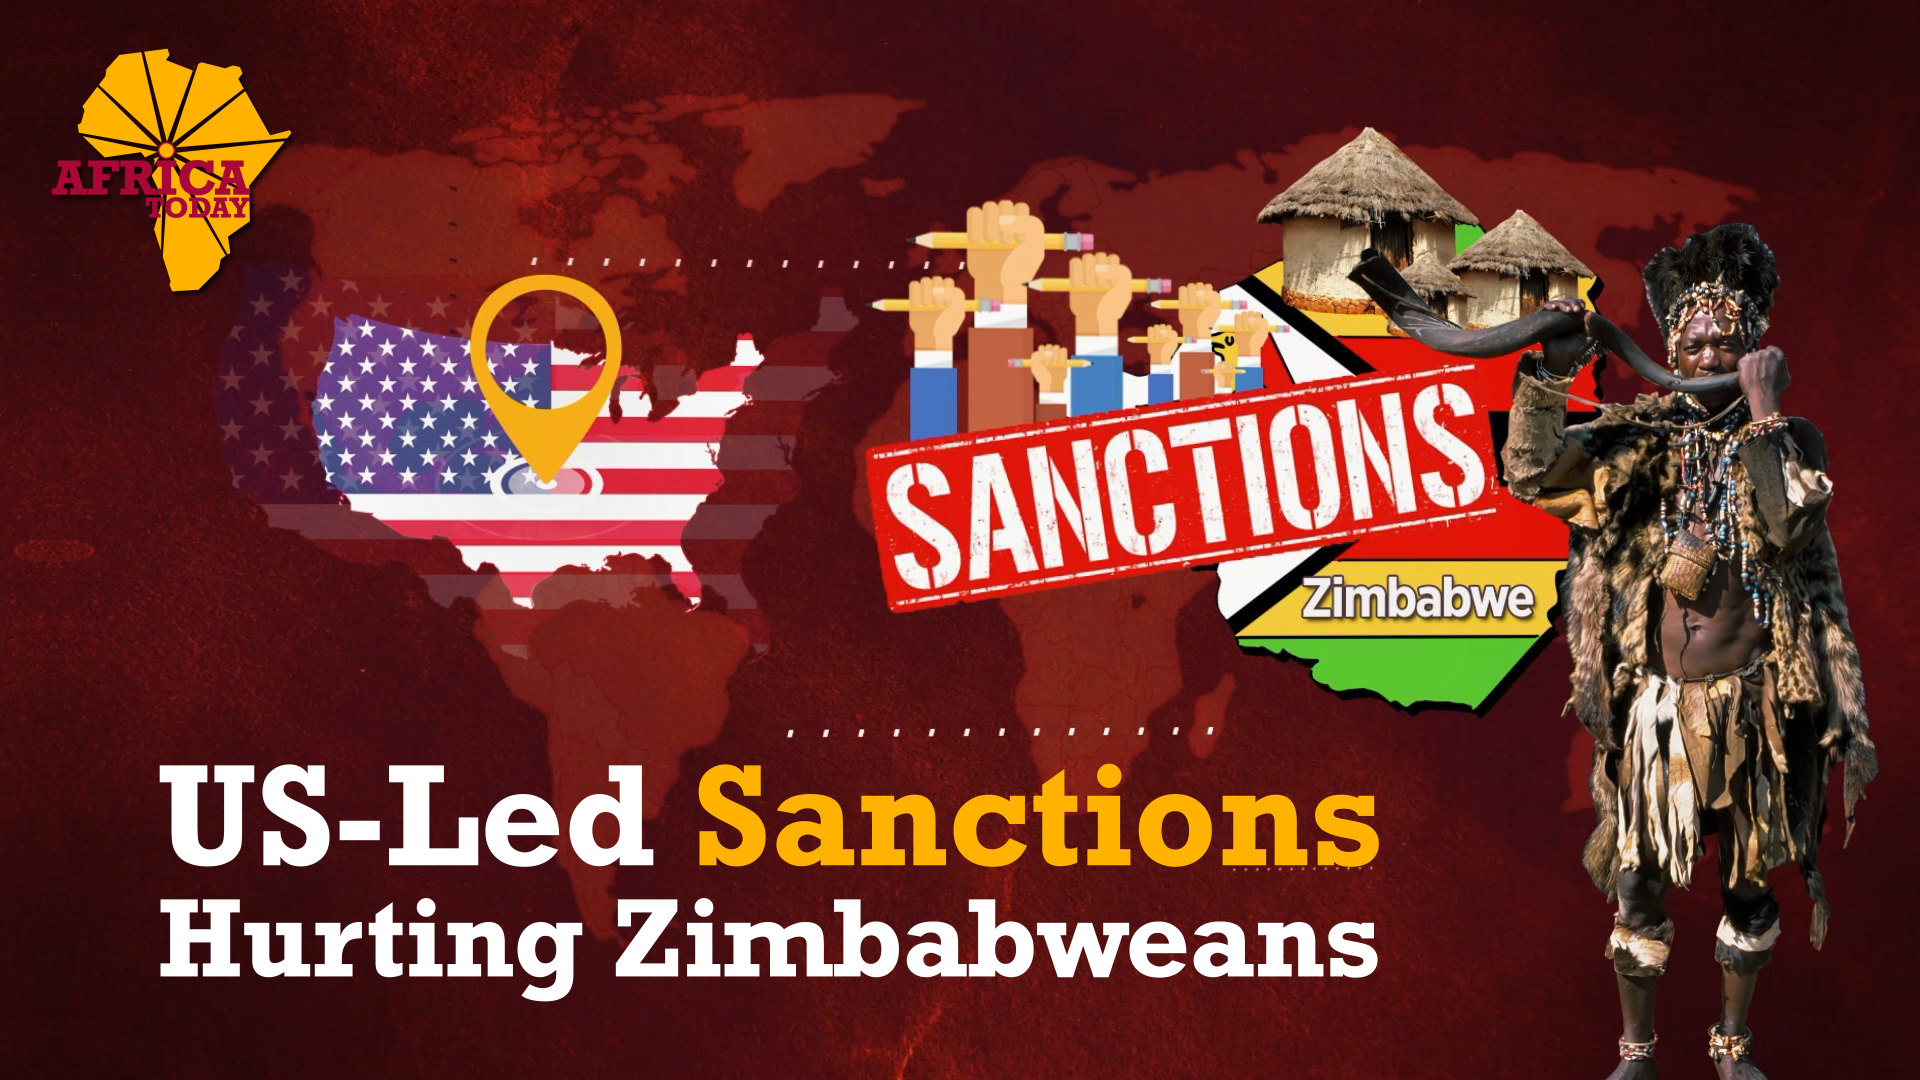 US-led sanctions against Zimbabwe